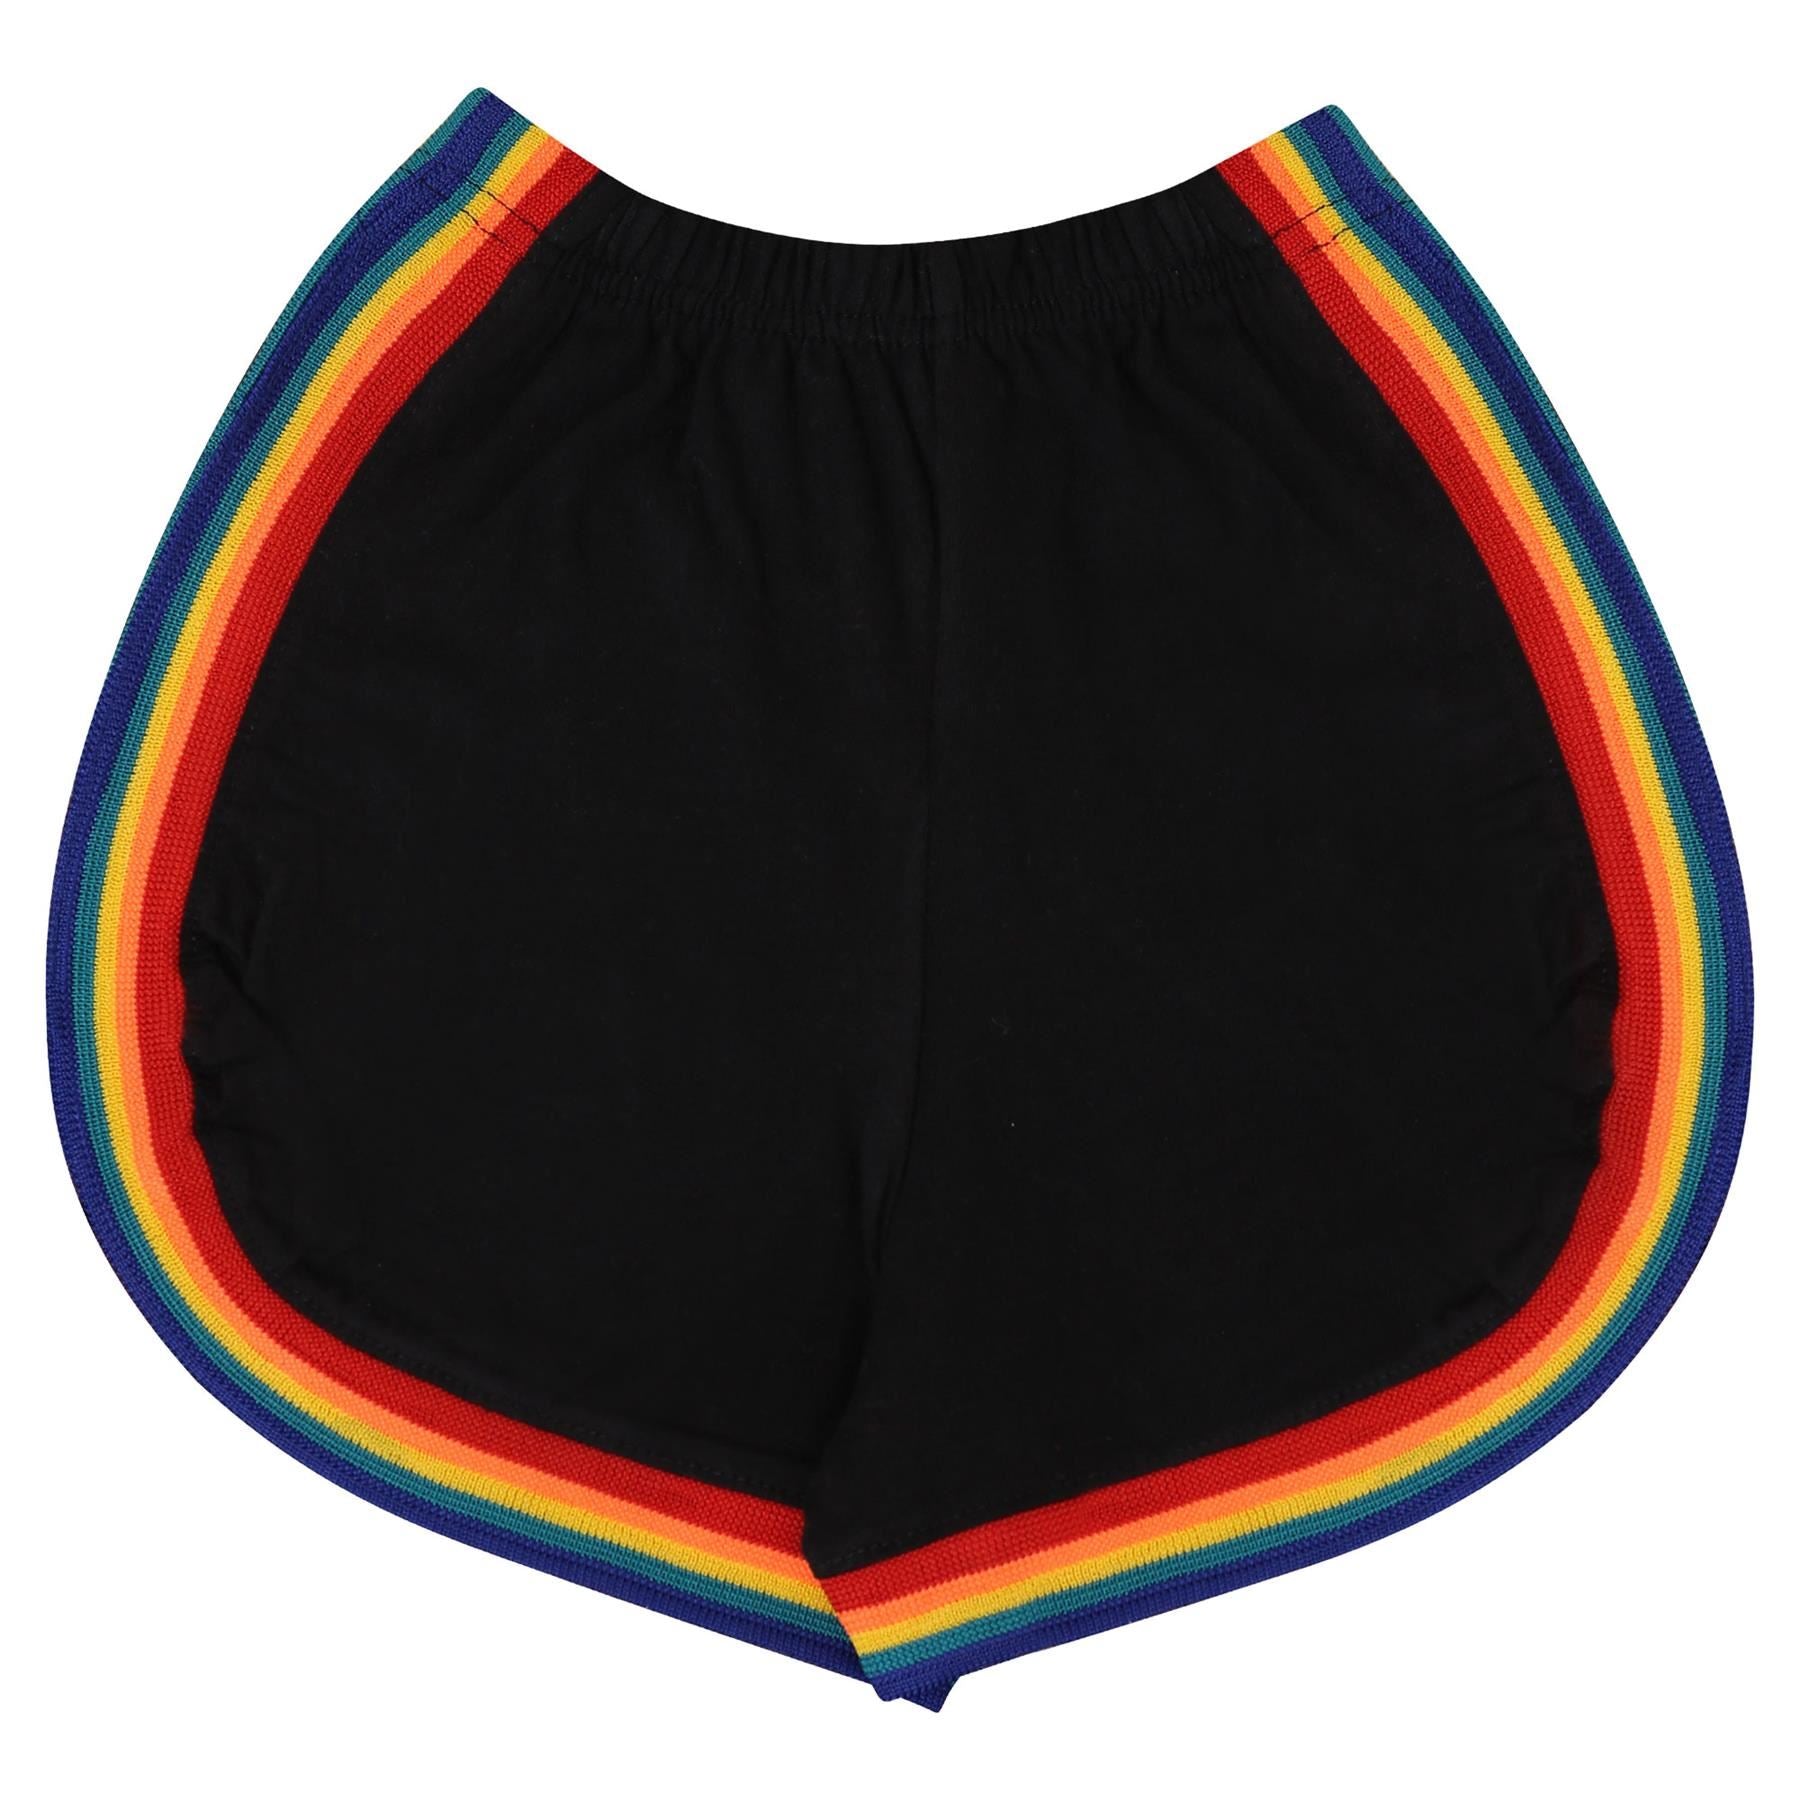 Kids Girls Rainbow Taped Summer Hot Shorts